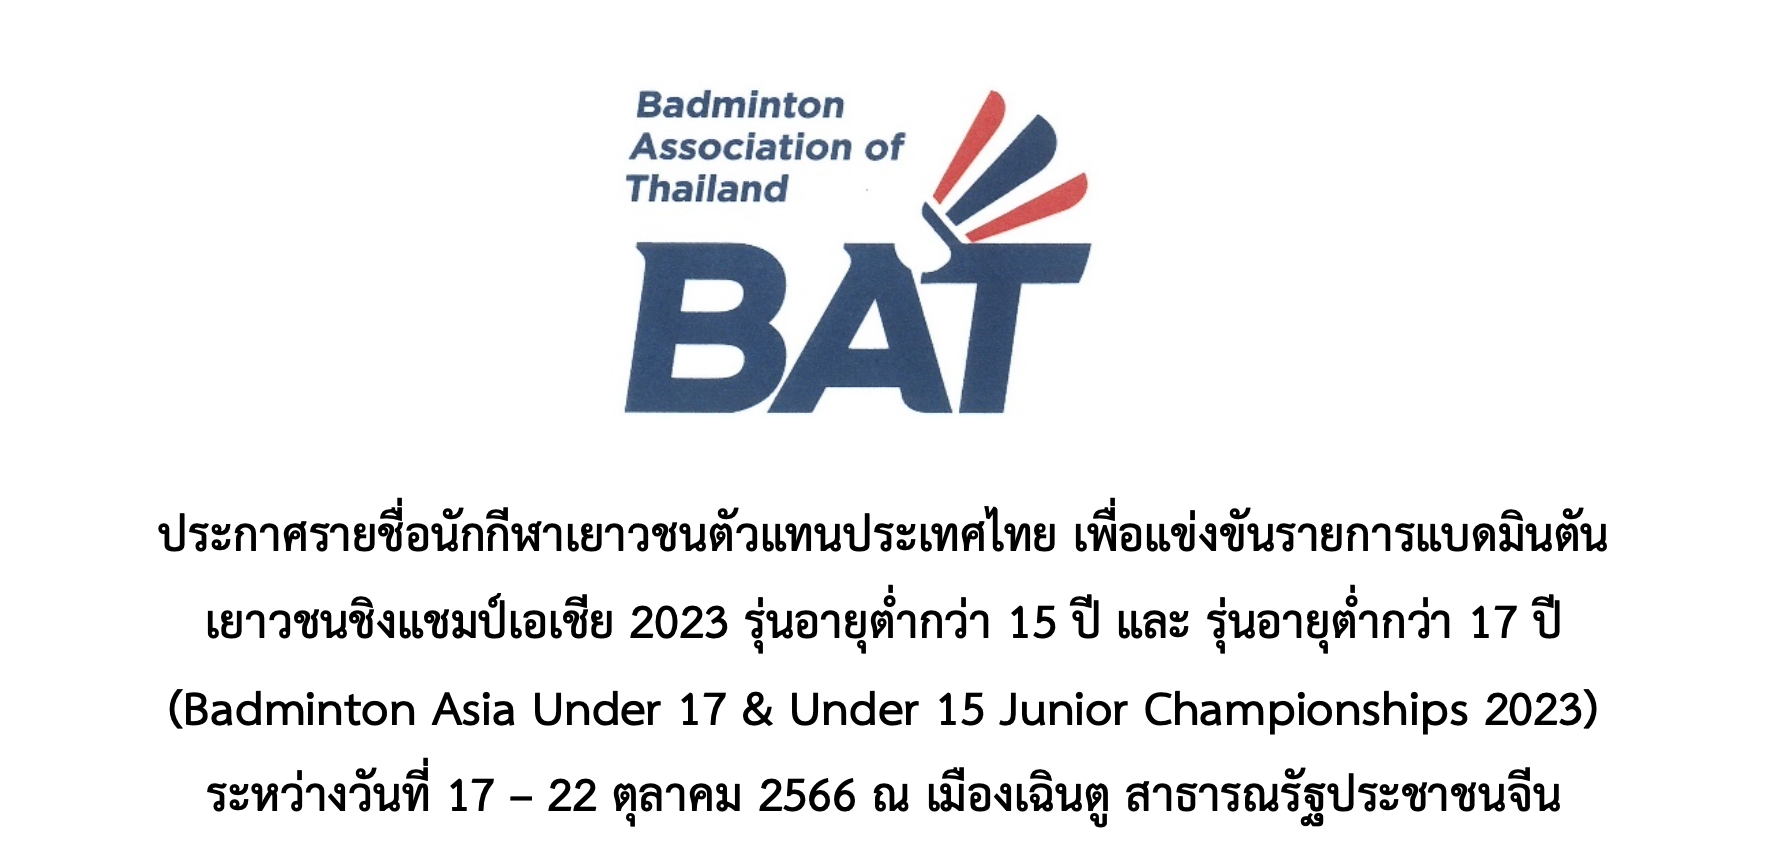 ประกาศรายชื่อนักกีฬาเยาวชนตัวแทนประเทศไทย รายการBadminton Asia Under 17 & Under 15 Junior Championships 2023